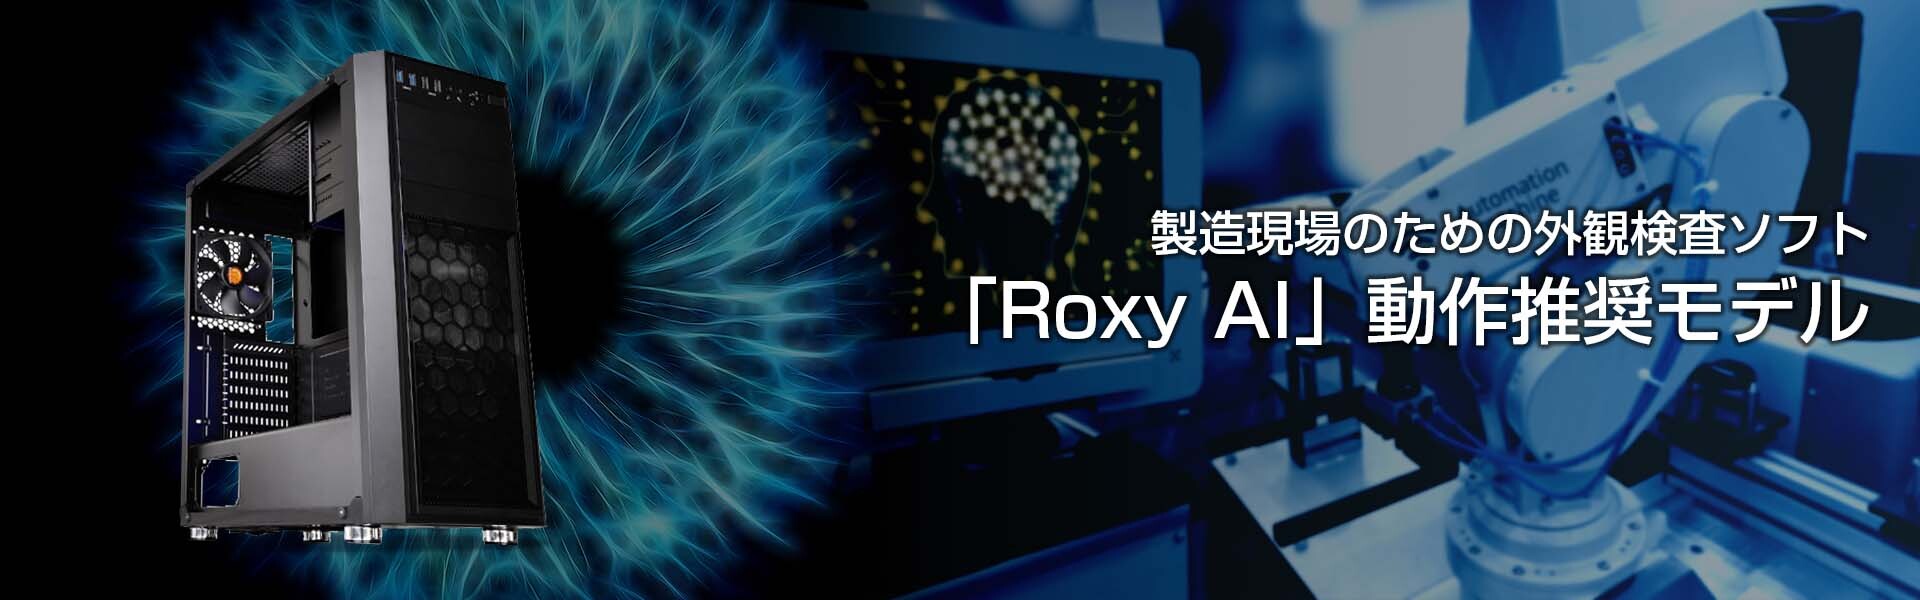 製造現場の為の外観検査「Roxy AI」